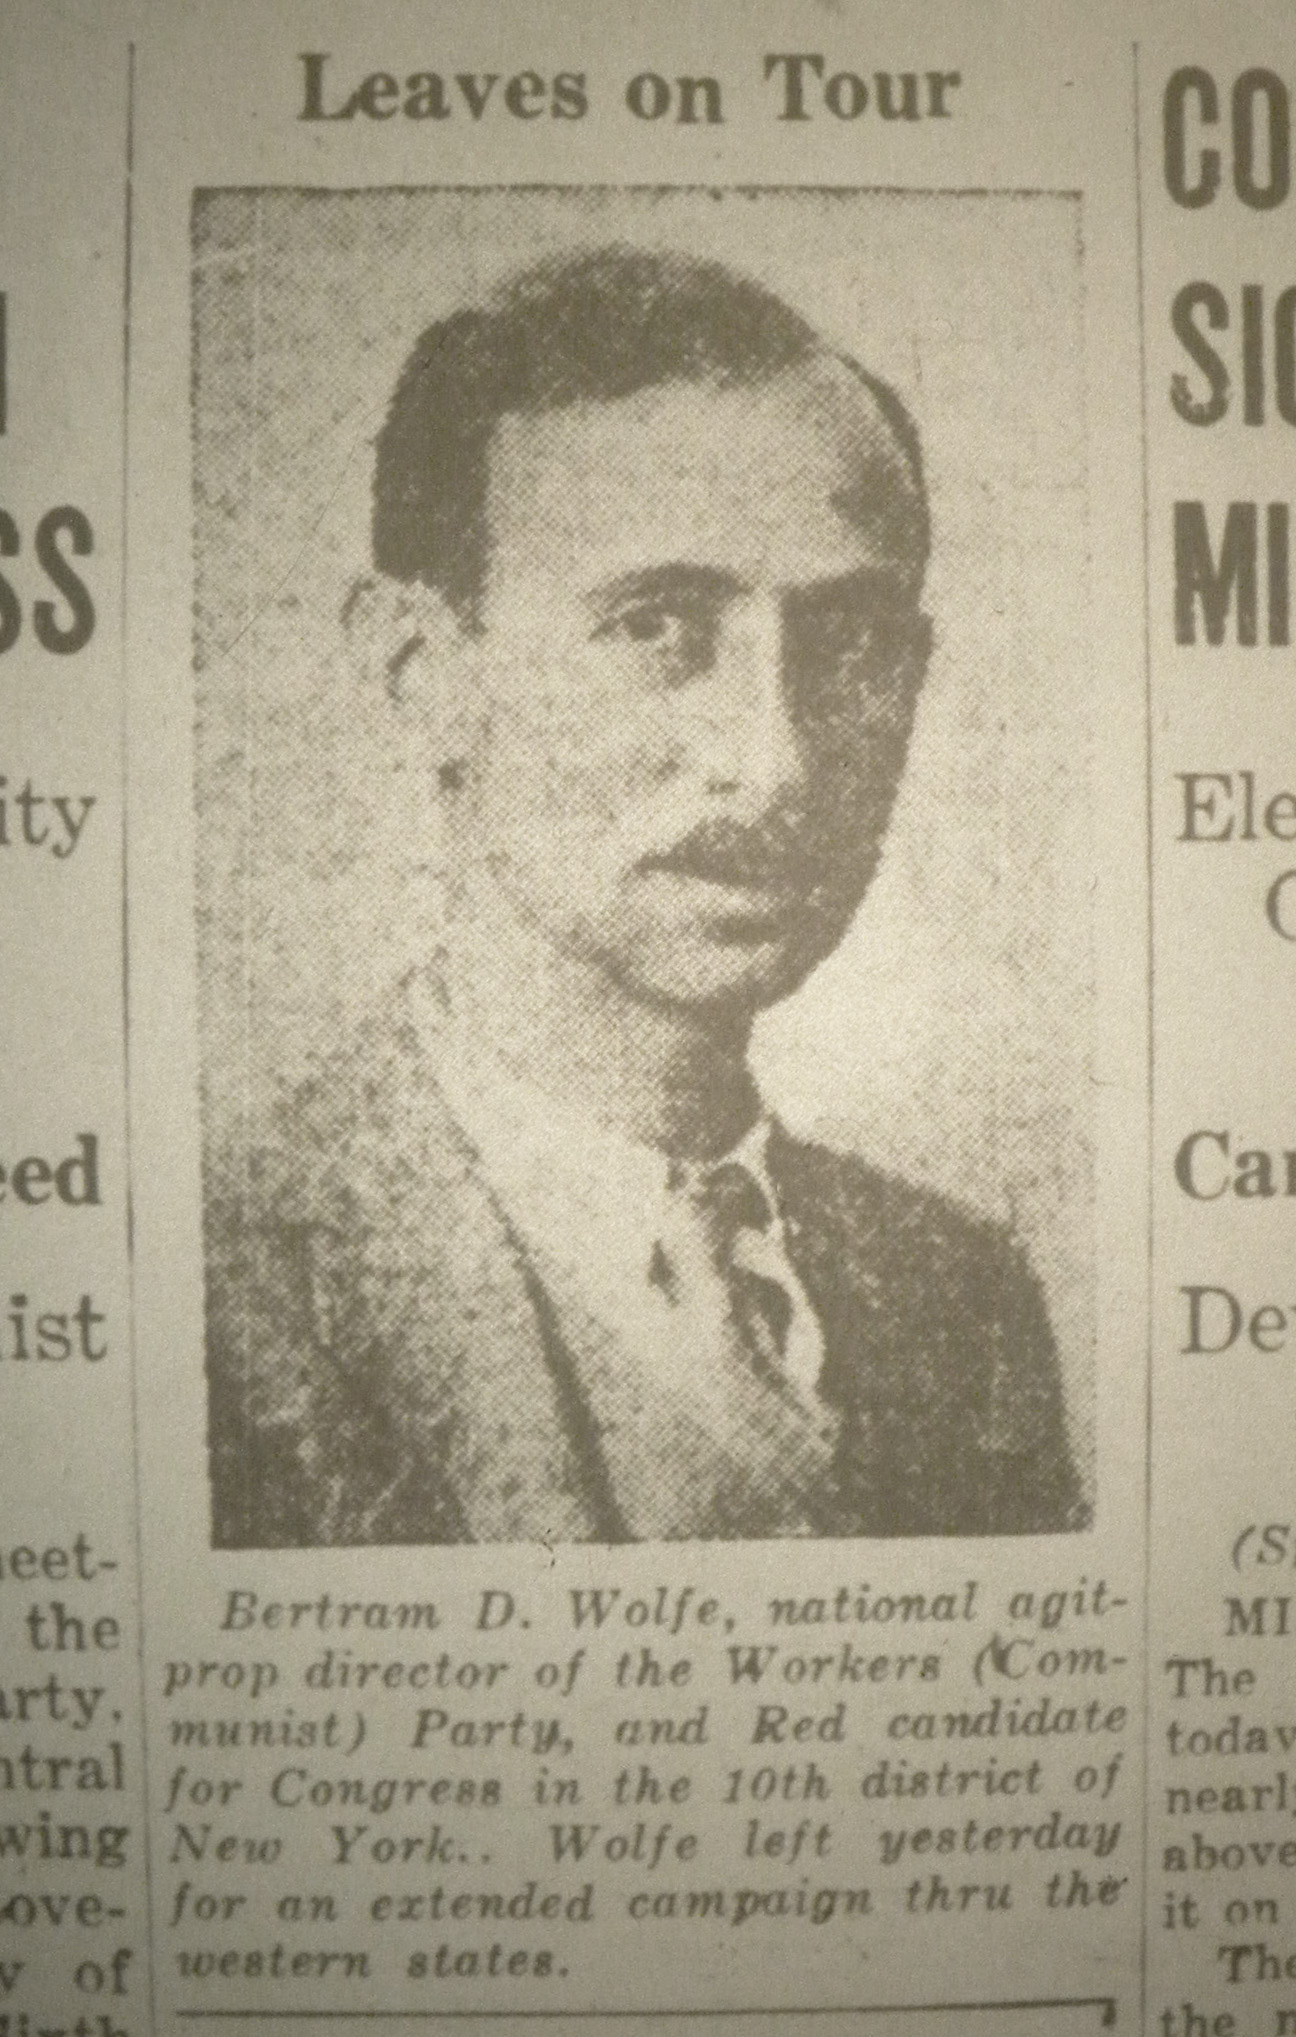 Bertram D. Wolfe, 1919.